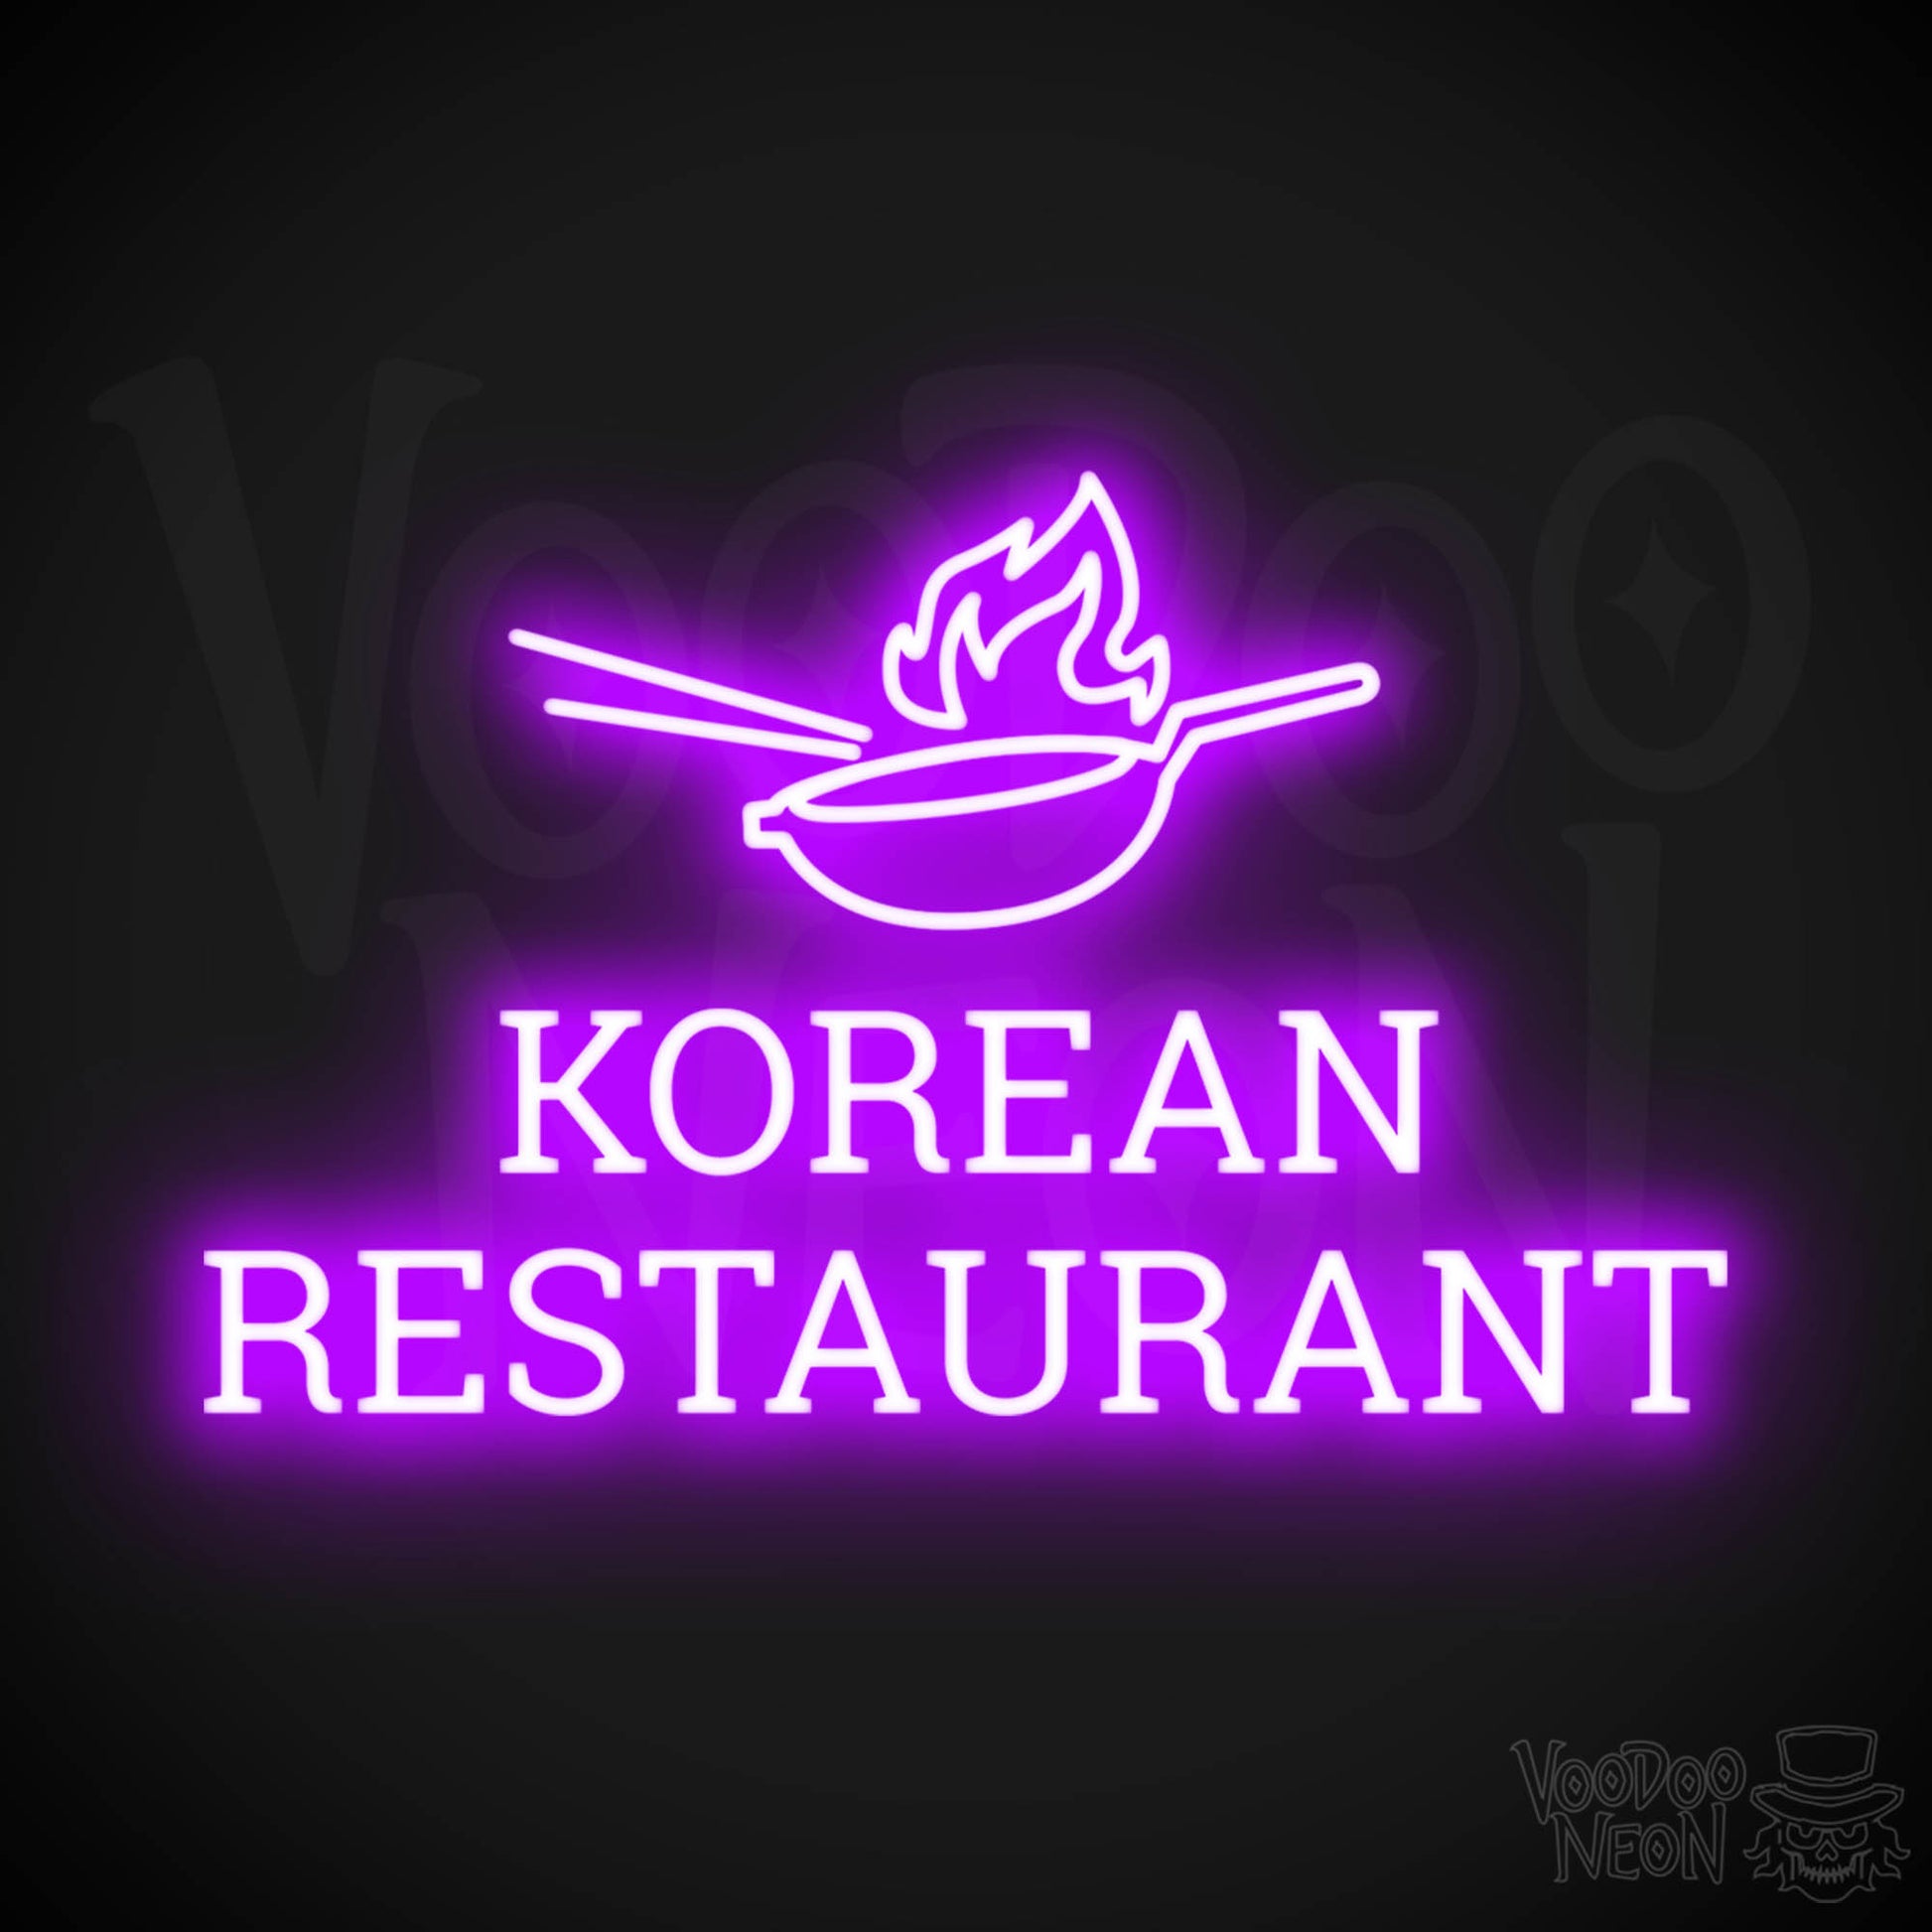 Korean Restaurant LED Neon - Purple